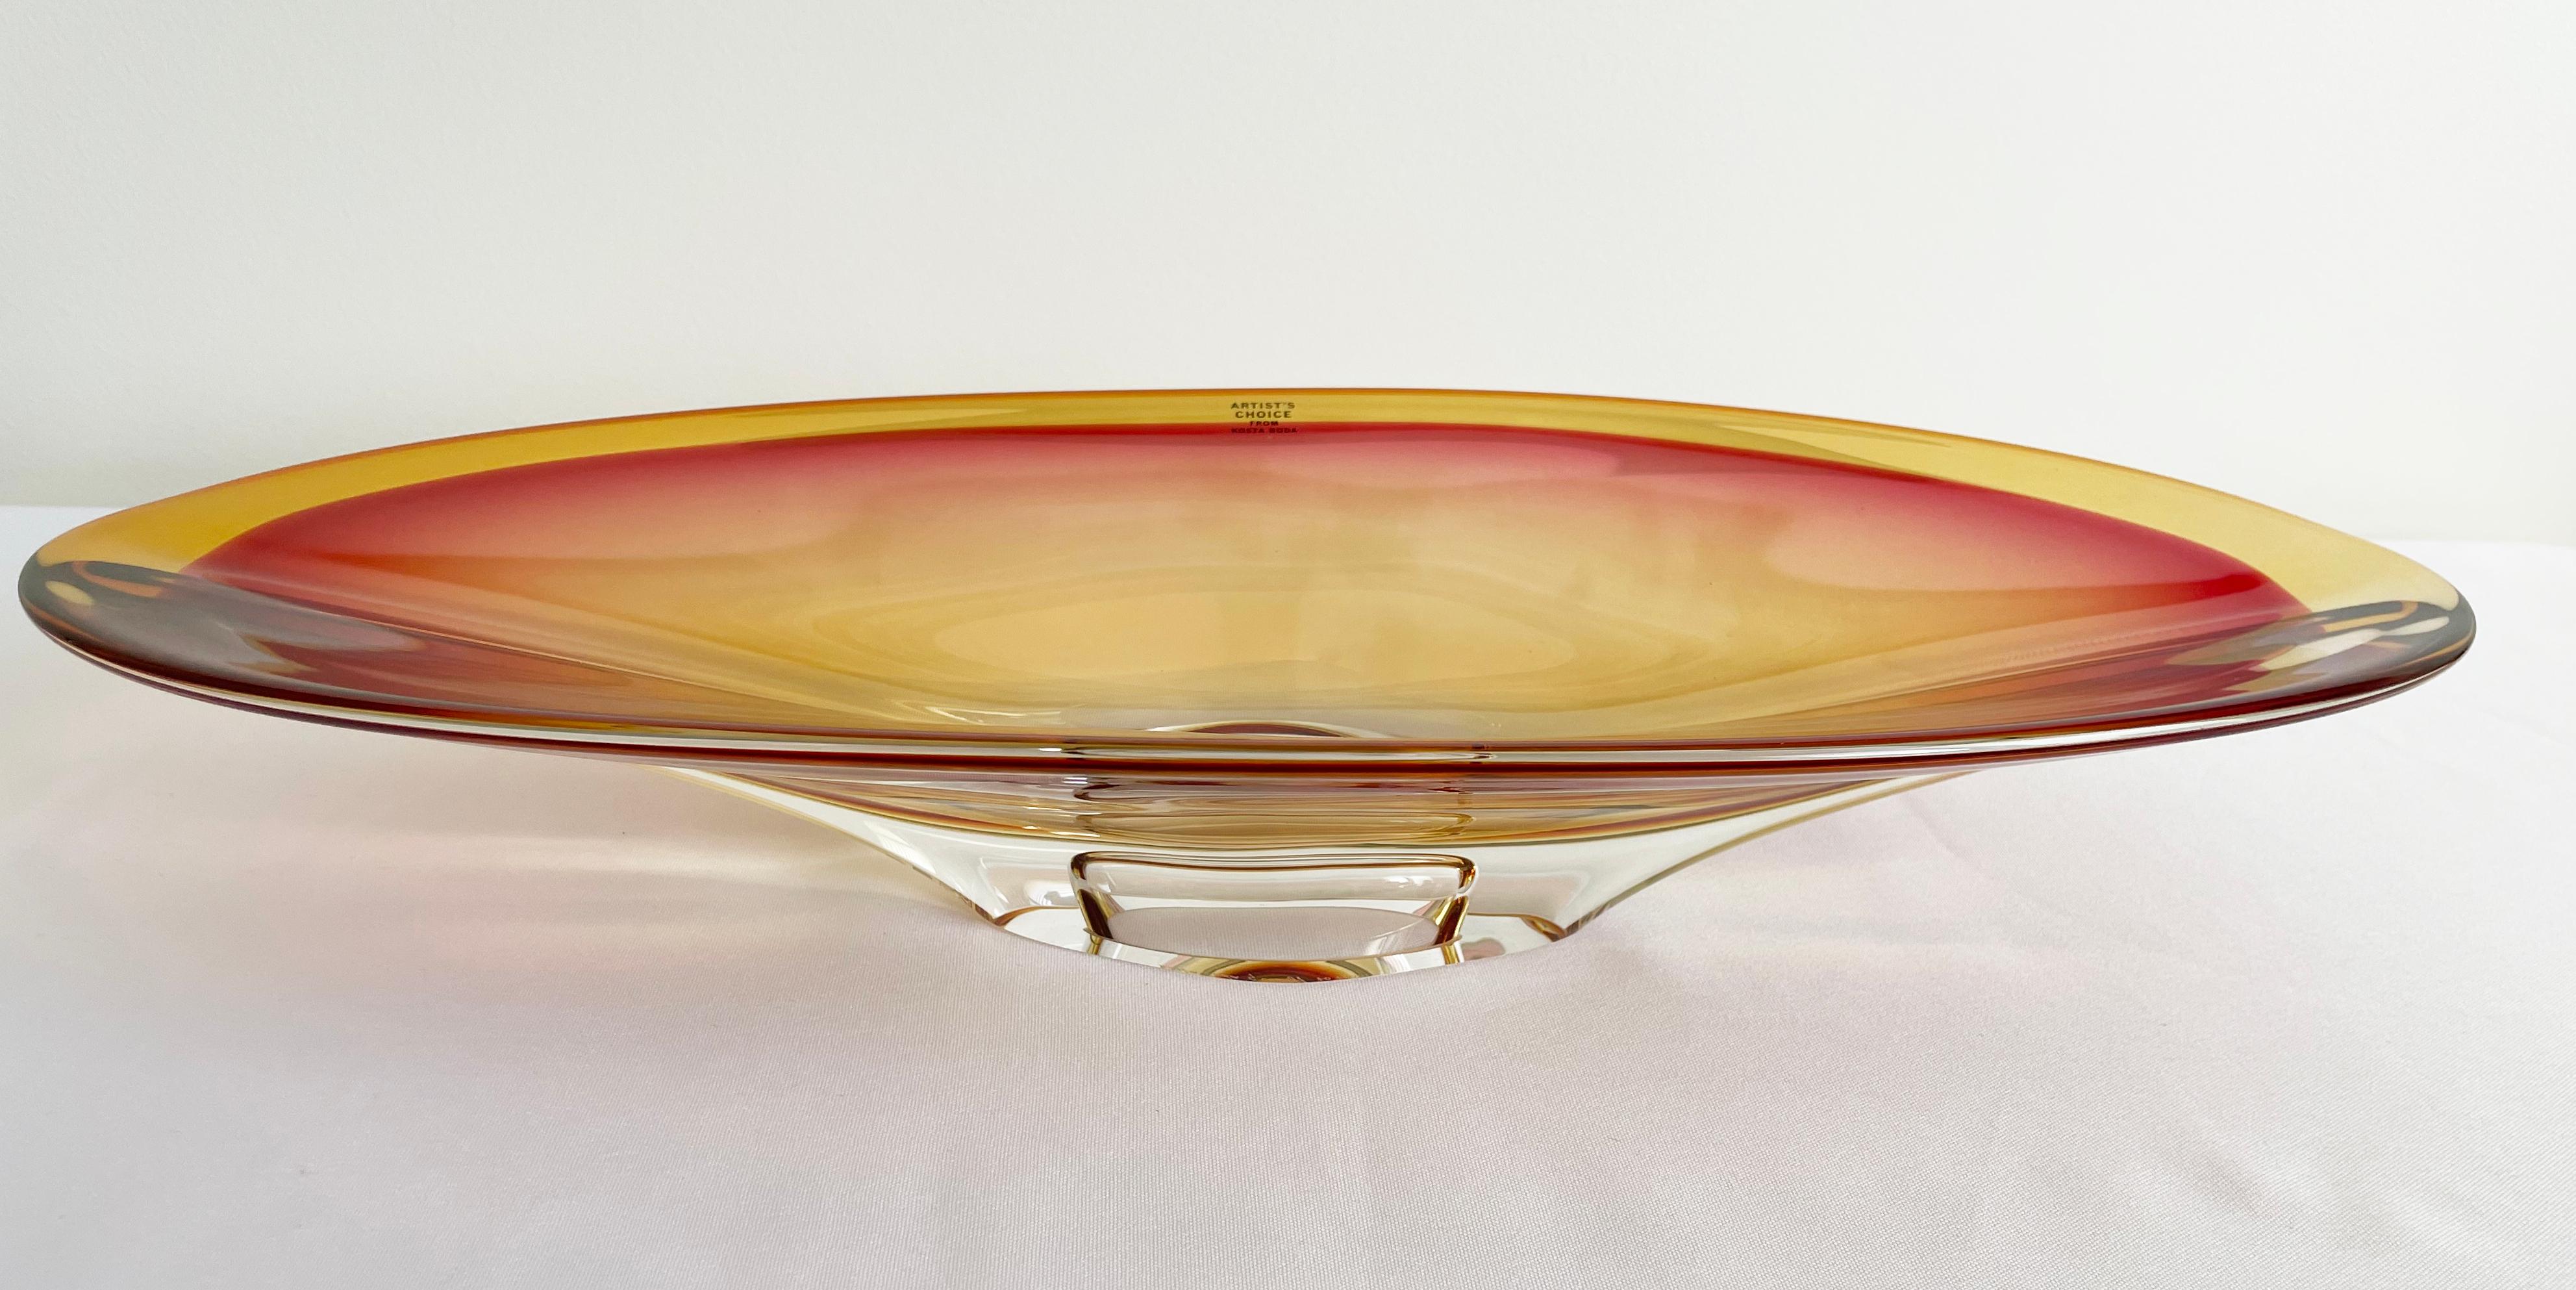 Eine große und beeindruckende Schale aus der Kosta Boda Vision Serie, entworfen von dem legendären Glaskünstler Göran Wärff.  Sanfte rosa/rote Farbtöne.

Vision wird in der Glashütte Kosta in Schweden mundgeblasen und ist Teil der Kosta Boda Artist